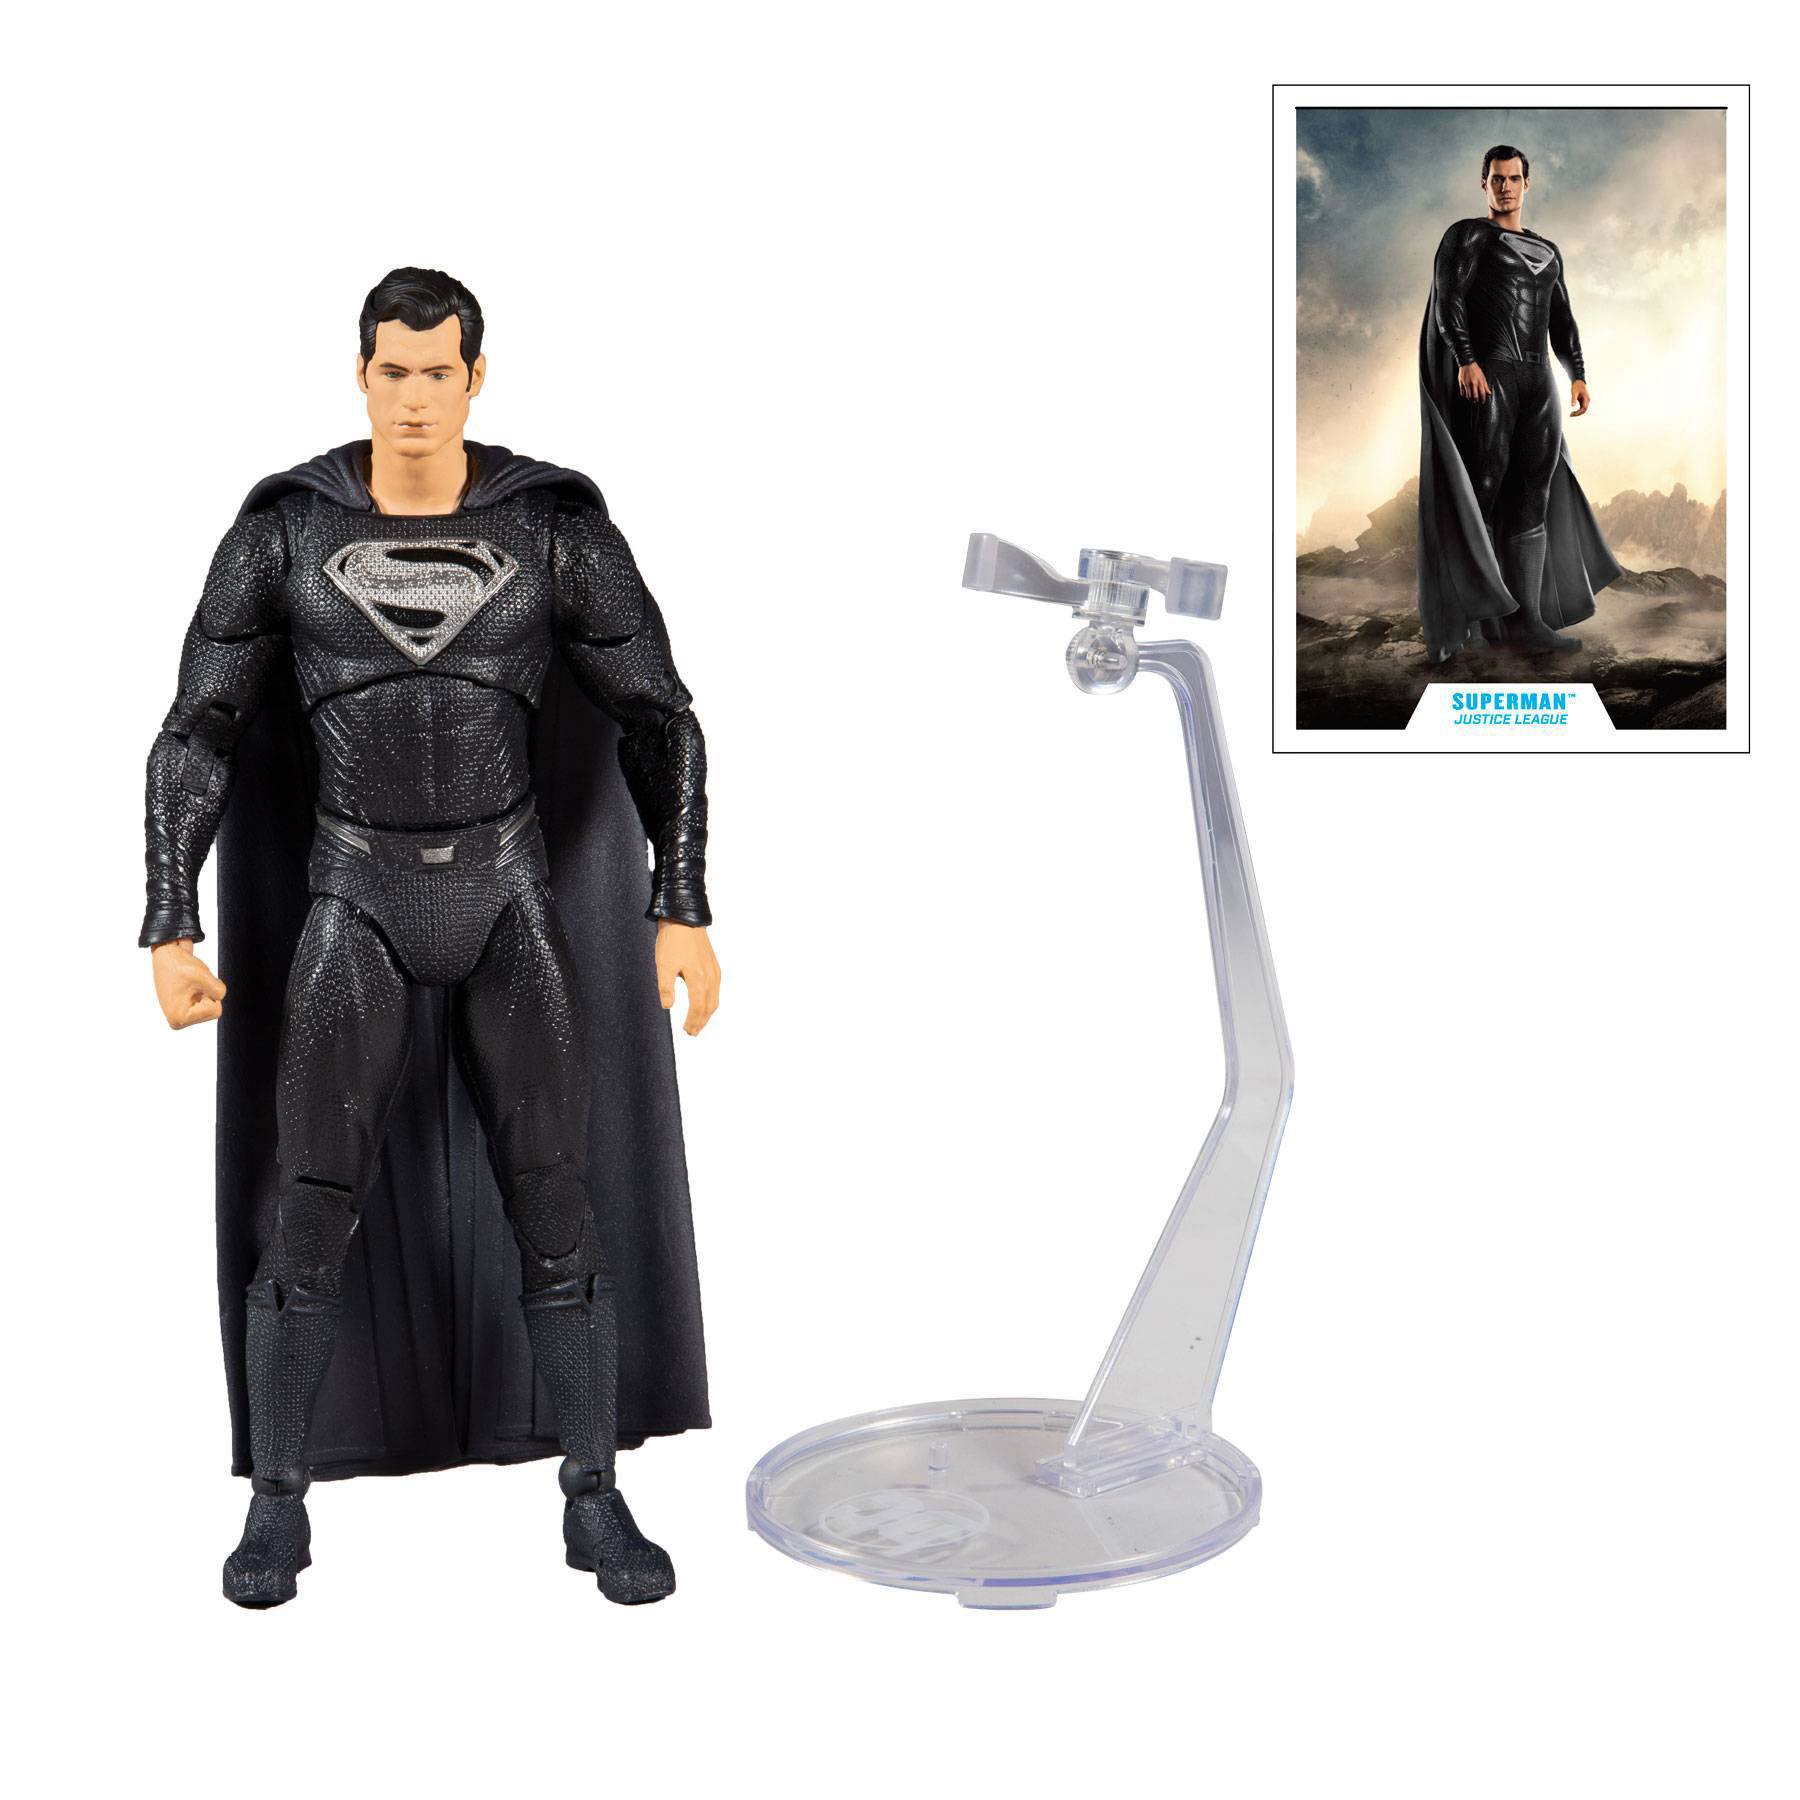 DC Justice League Movie Actionfigur Superman 18 cm MCF15095-7 787926150957